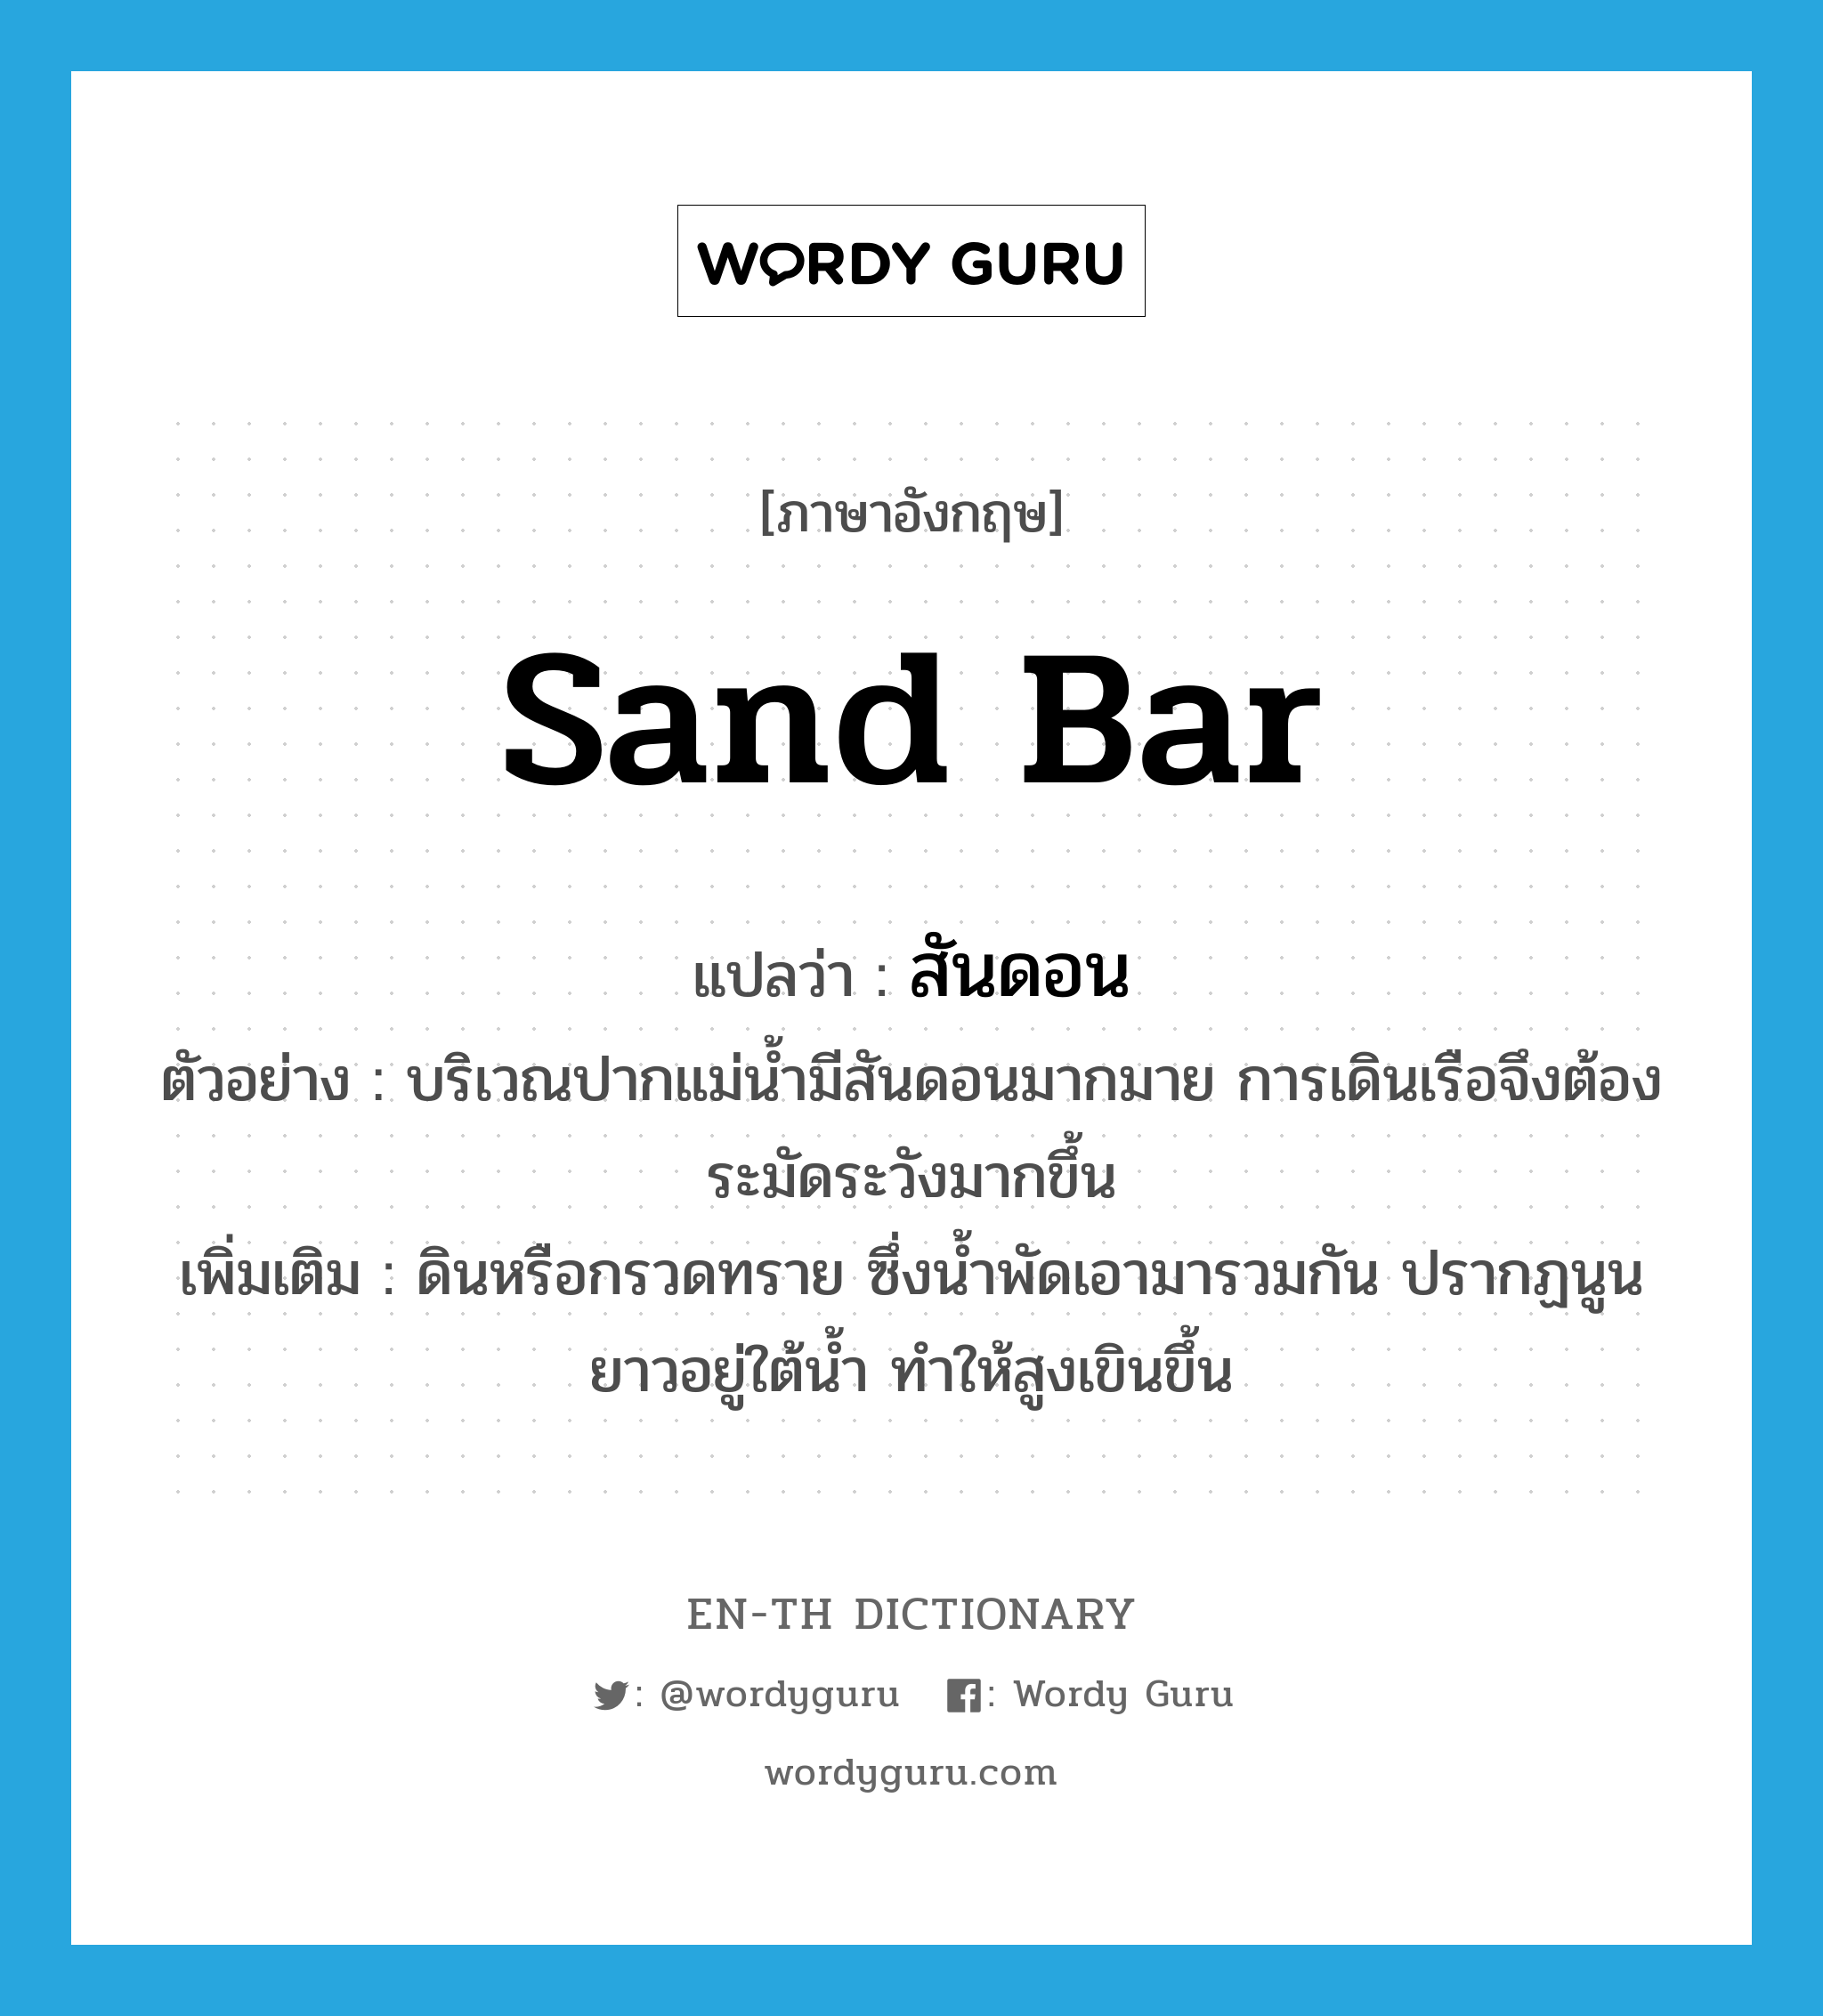 sand bar แปลว่า?, คำศัพท์ภาษาอังกฤษ sand bar แปลว่า สันดอน ประเภท N ตัวอย่าง บริเวณปากแม่น้ำมีสันดอนมากมาย การเดินเรือจึงต้องระมัดระวังมากขึ้น เพิ่มเติม ดินหรือกรวดทราย ซึ่งน้ำพัดเอามารวมกัน ปรากฏนูนยาวอยู่ใต้น้ำ ทำให้สูงเขินขึ้น หมวด N